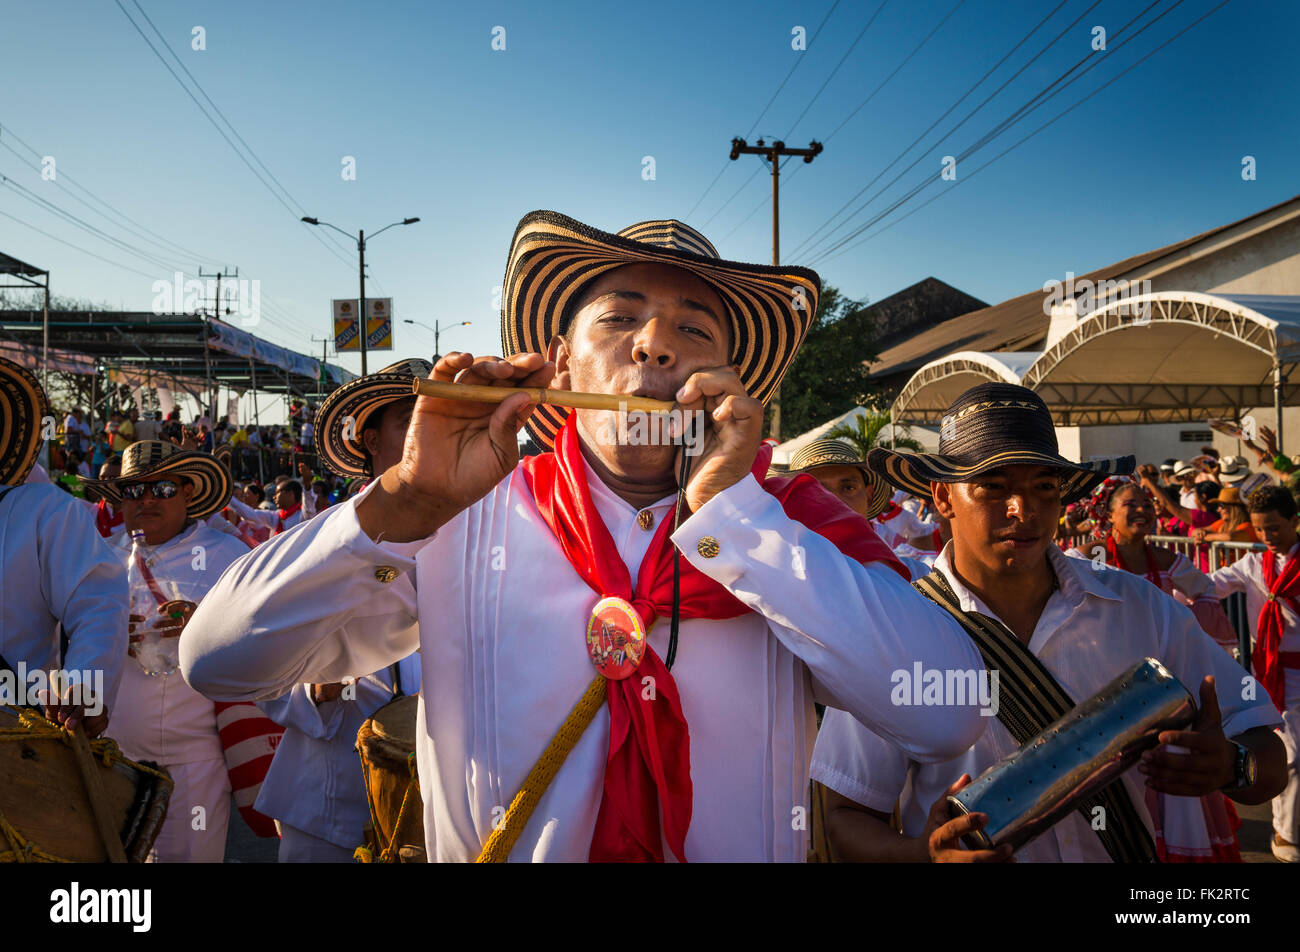 Barranquilla, Colombia - 1 Marzo 2014: Persone a sfilate di carnevale nel carnevale di Barranquilla in Colombia. Foto Stock